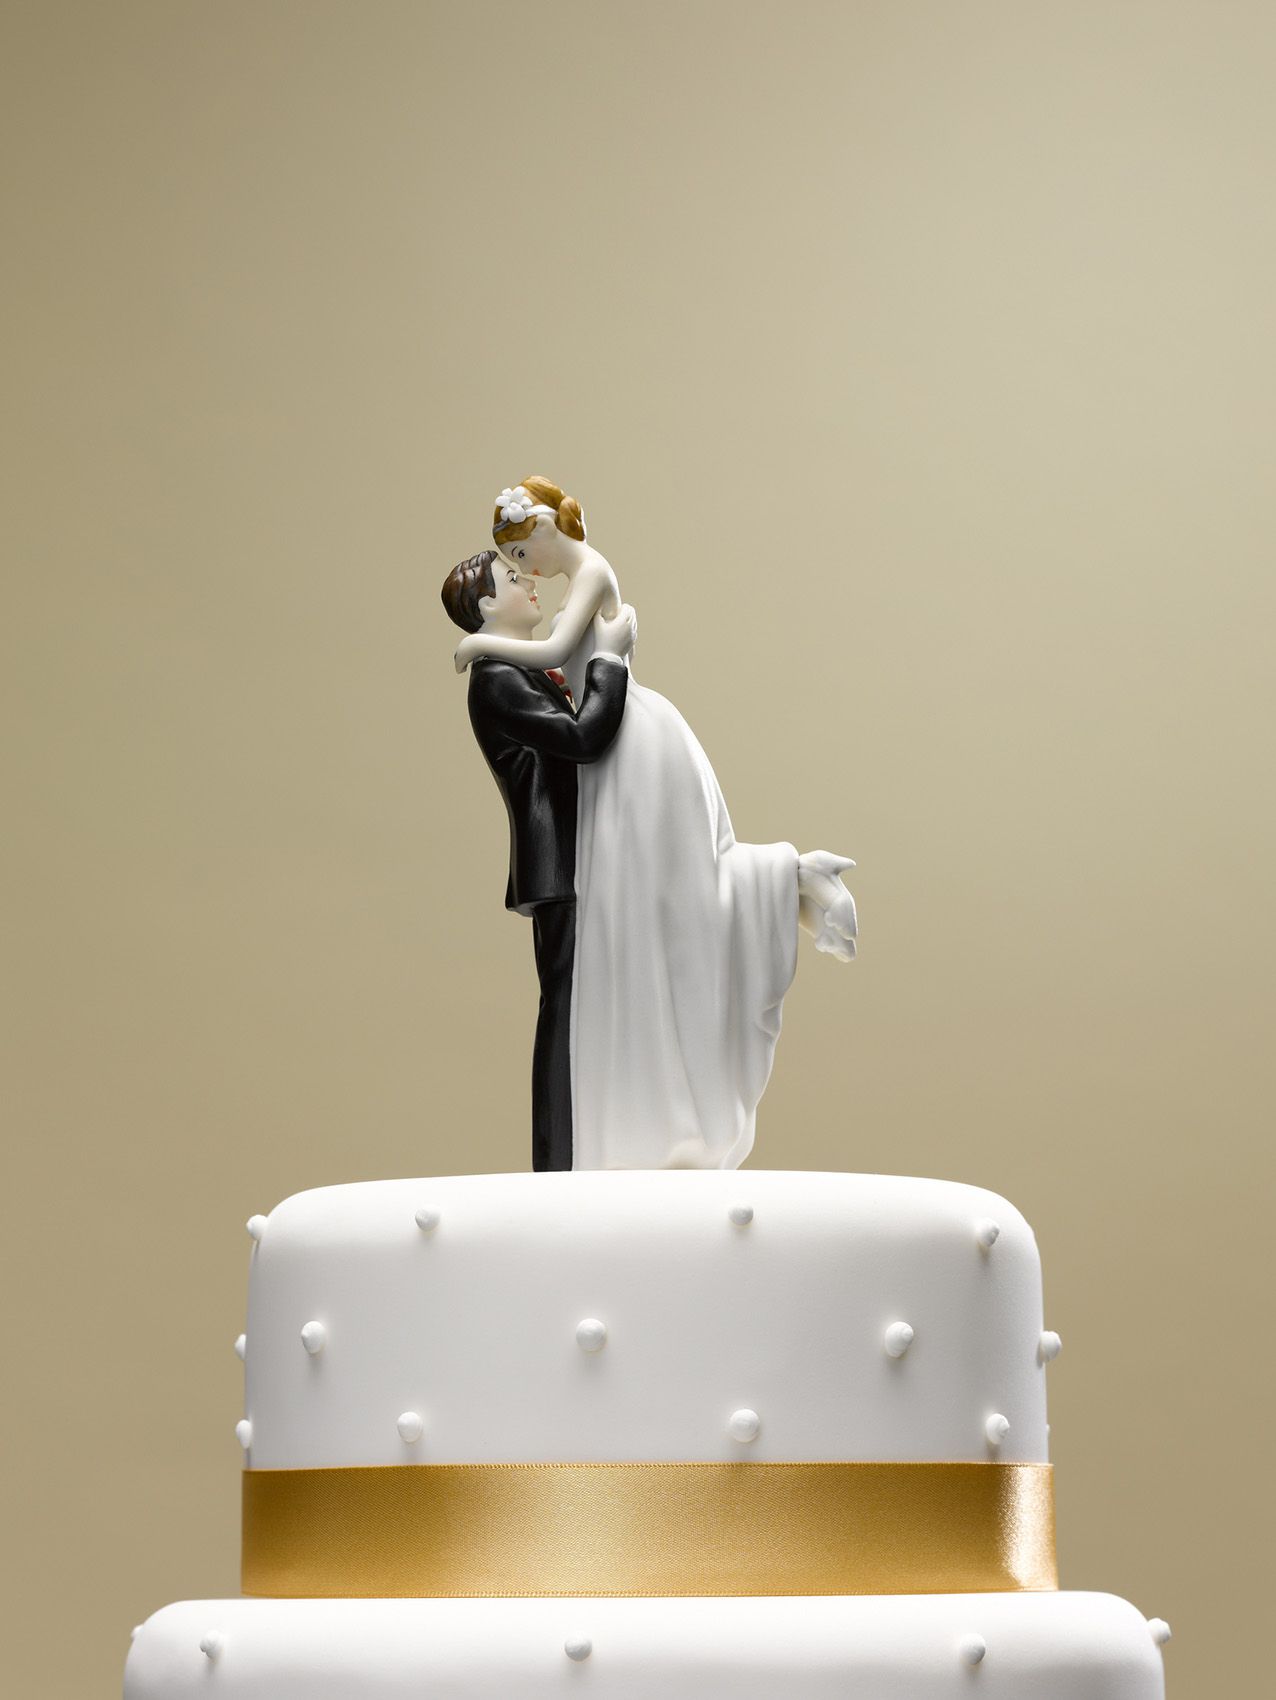 Līgavu un līgavaiņa virsotne uz kāzu torte